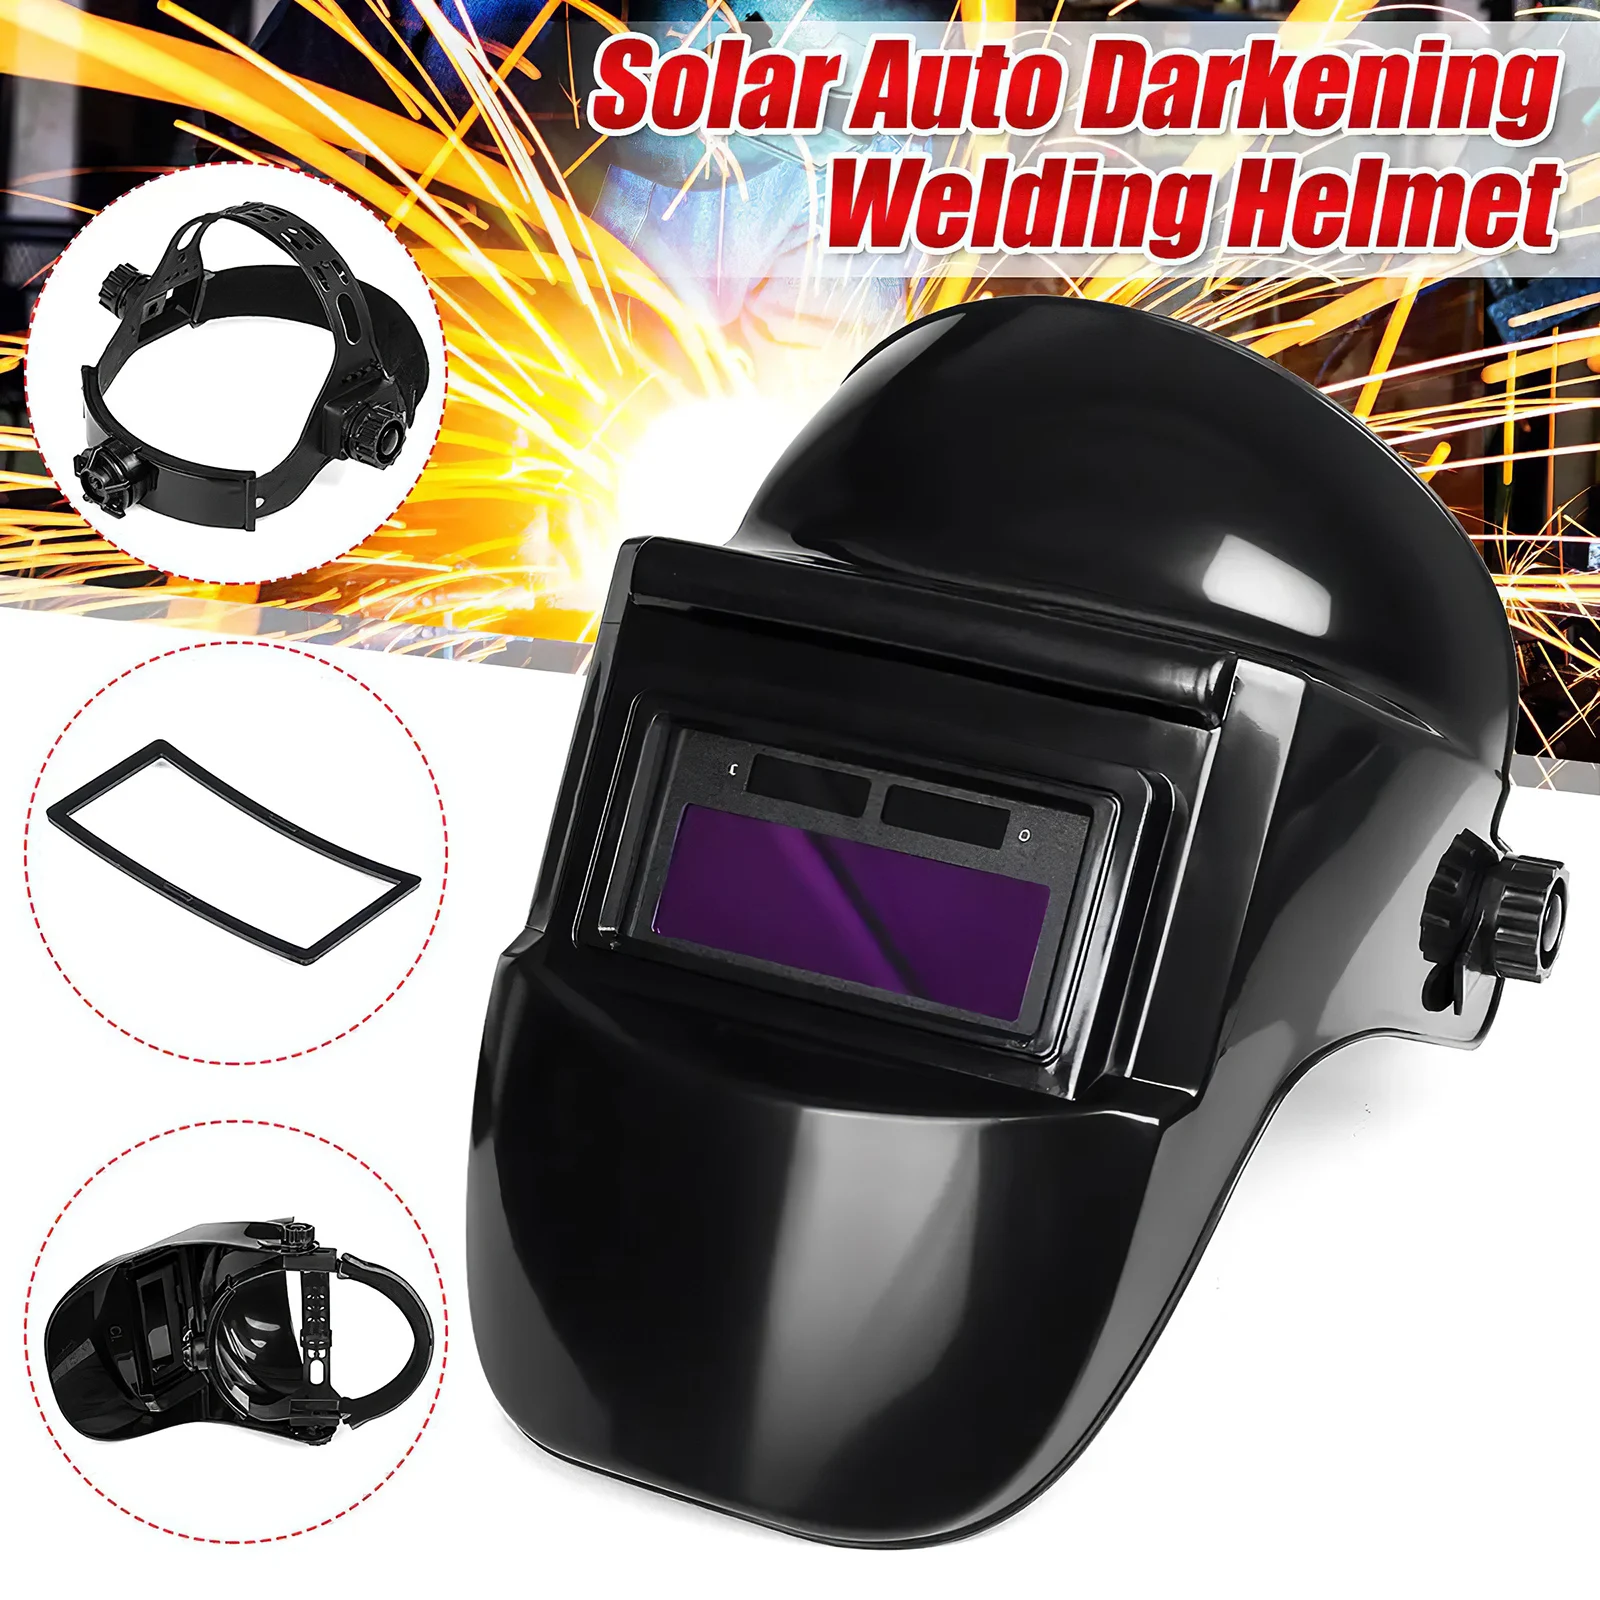 

Solar Auto Darkening Welding Helmet Adjustable Headband for TIG MIG Arc Argon Weld Grinding Welder Mask Electric Welding Cap